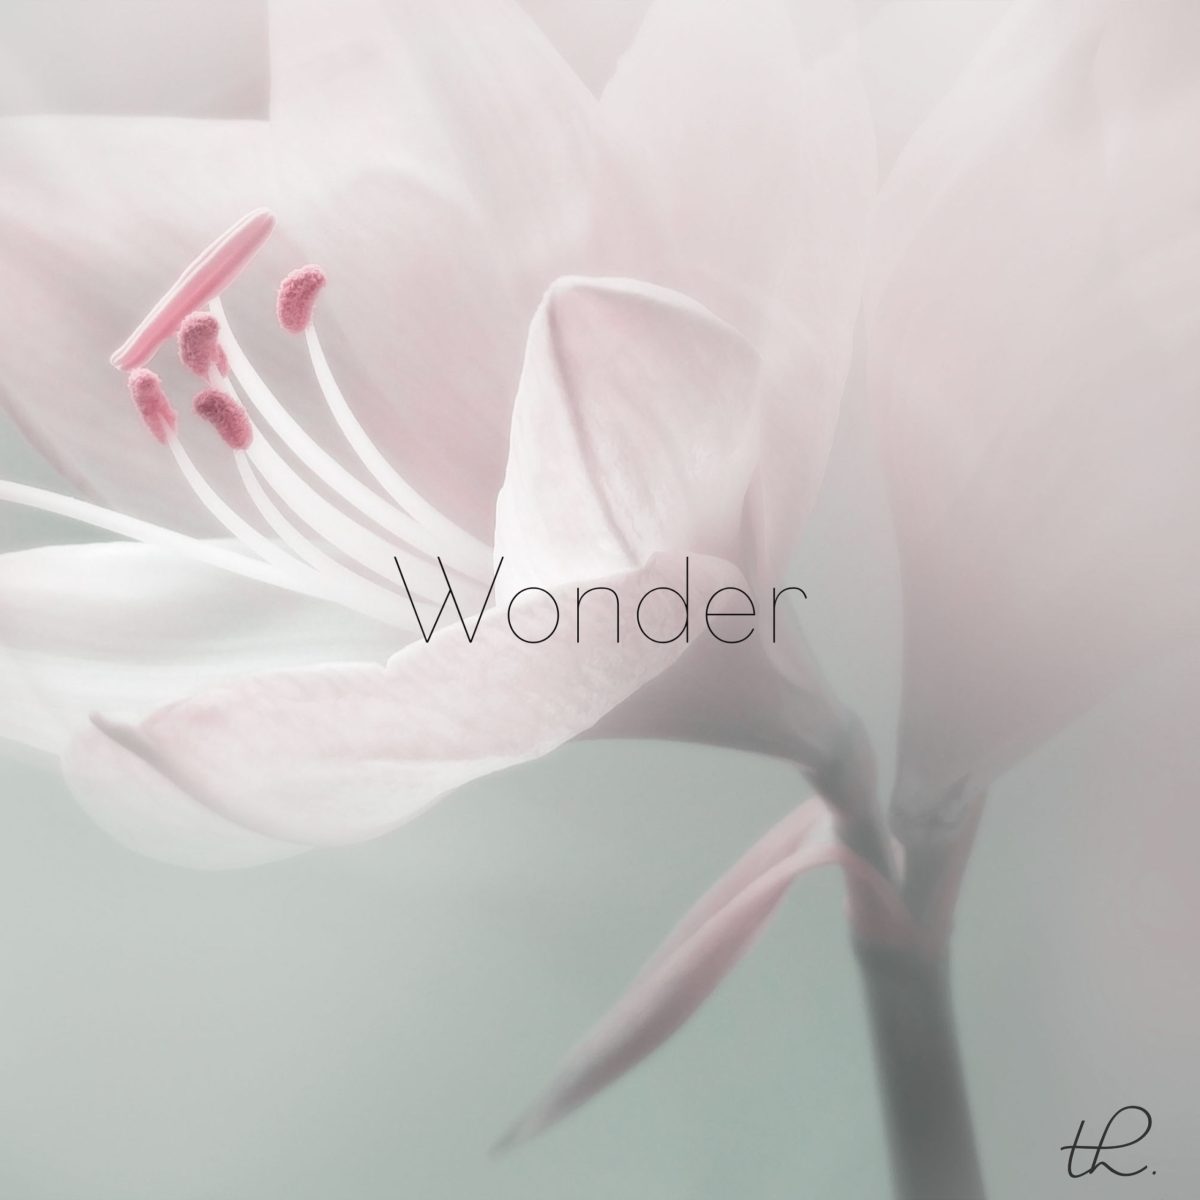 دانلود آلبوم موسیقی Wonder توسط Tiffany Hobson